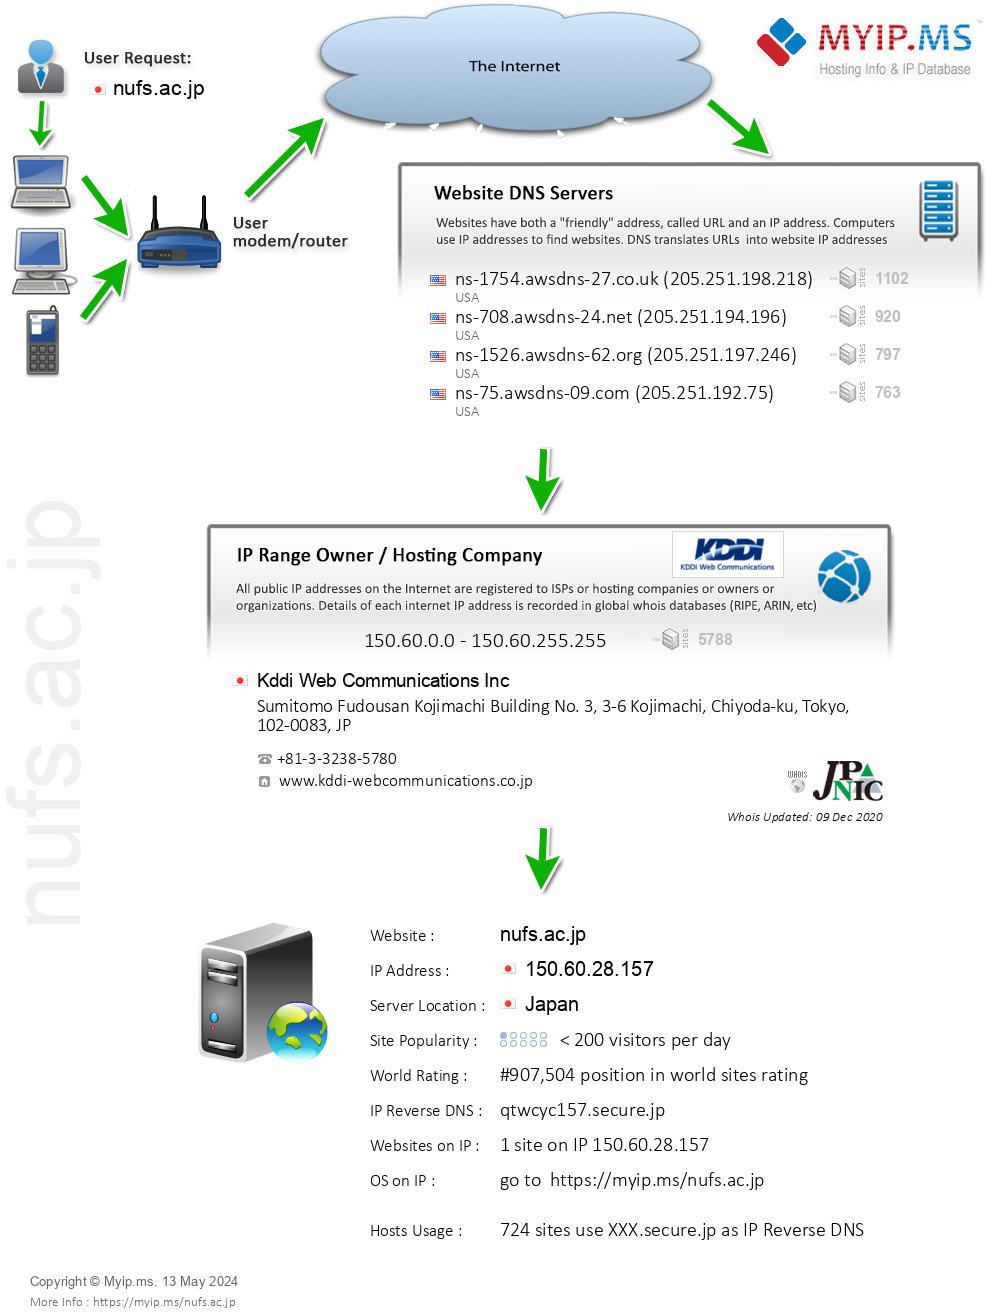 Nufs.ac.jp - Website Hosting Visual IP Diagram